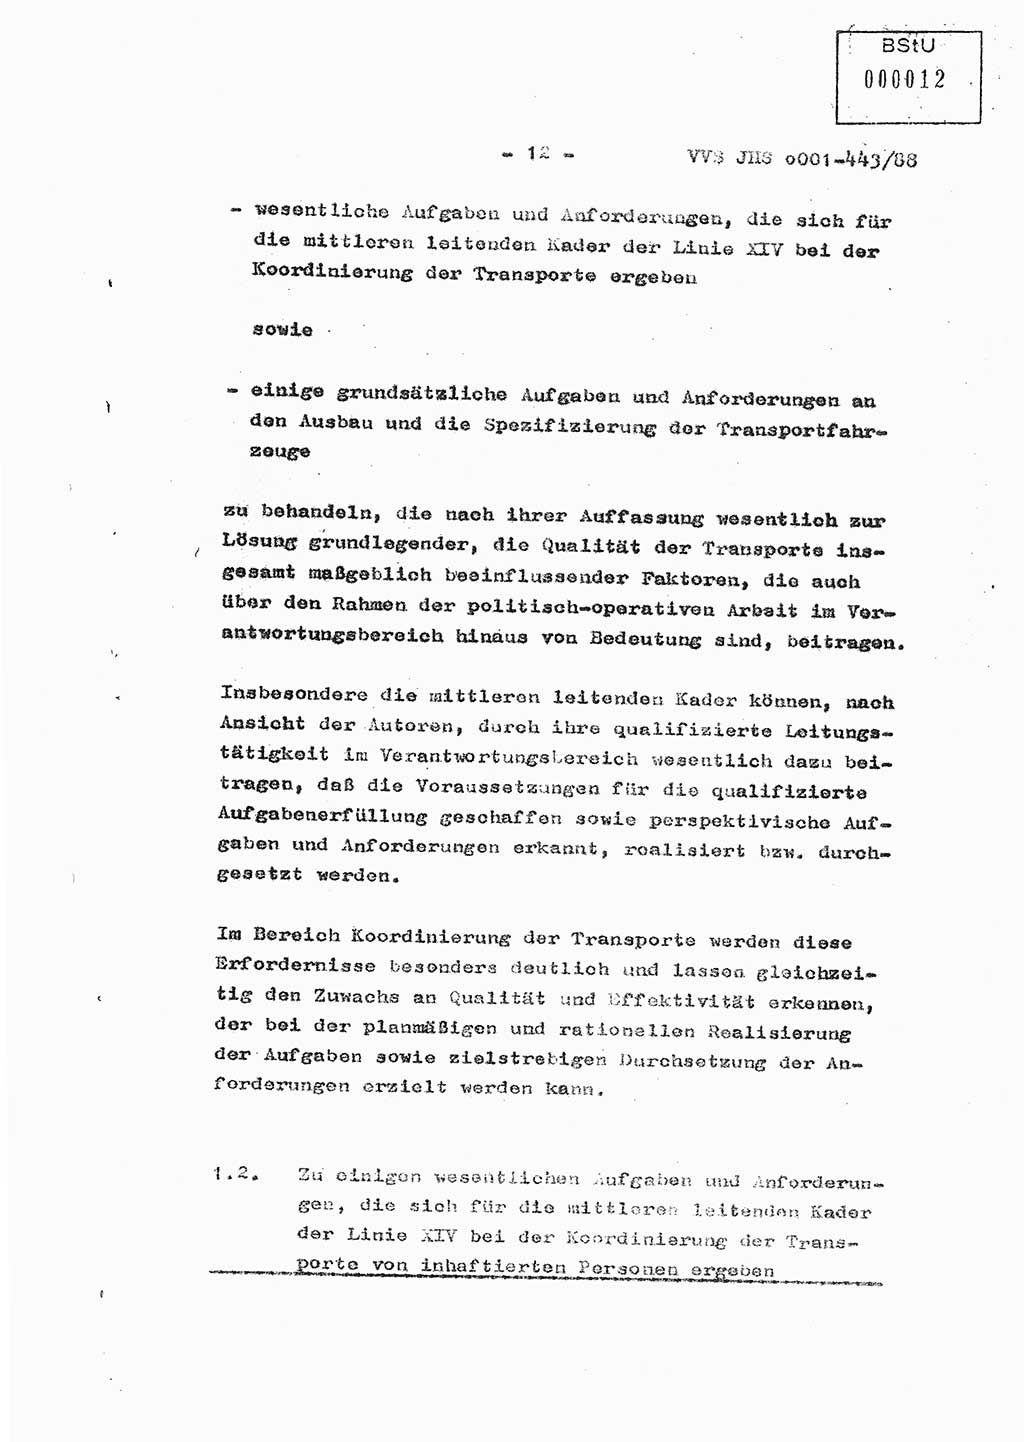 Diplomarbeit Hauptmann Michael Rast (Abt. ⅩⅣ), Major Bernd Rahaus (Abt. ⅩⅣ), Ministerium für Staatssicherheit (MfS) [Deutsche Demokratische Republik (DDR)], Juristische Hochschule (JHS), Vertrauliche Verschlußsache (VVS) o001-443/88, Potsdam 1988, Seite 12 (Dipl.-Arb. MfS DDR JHS VVS o001-443/88 1988, S. 12)